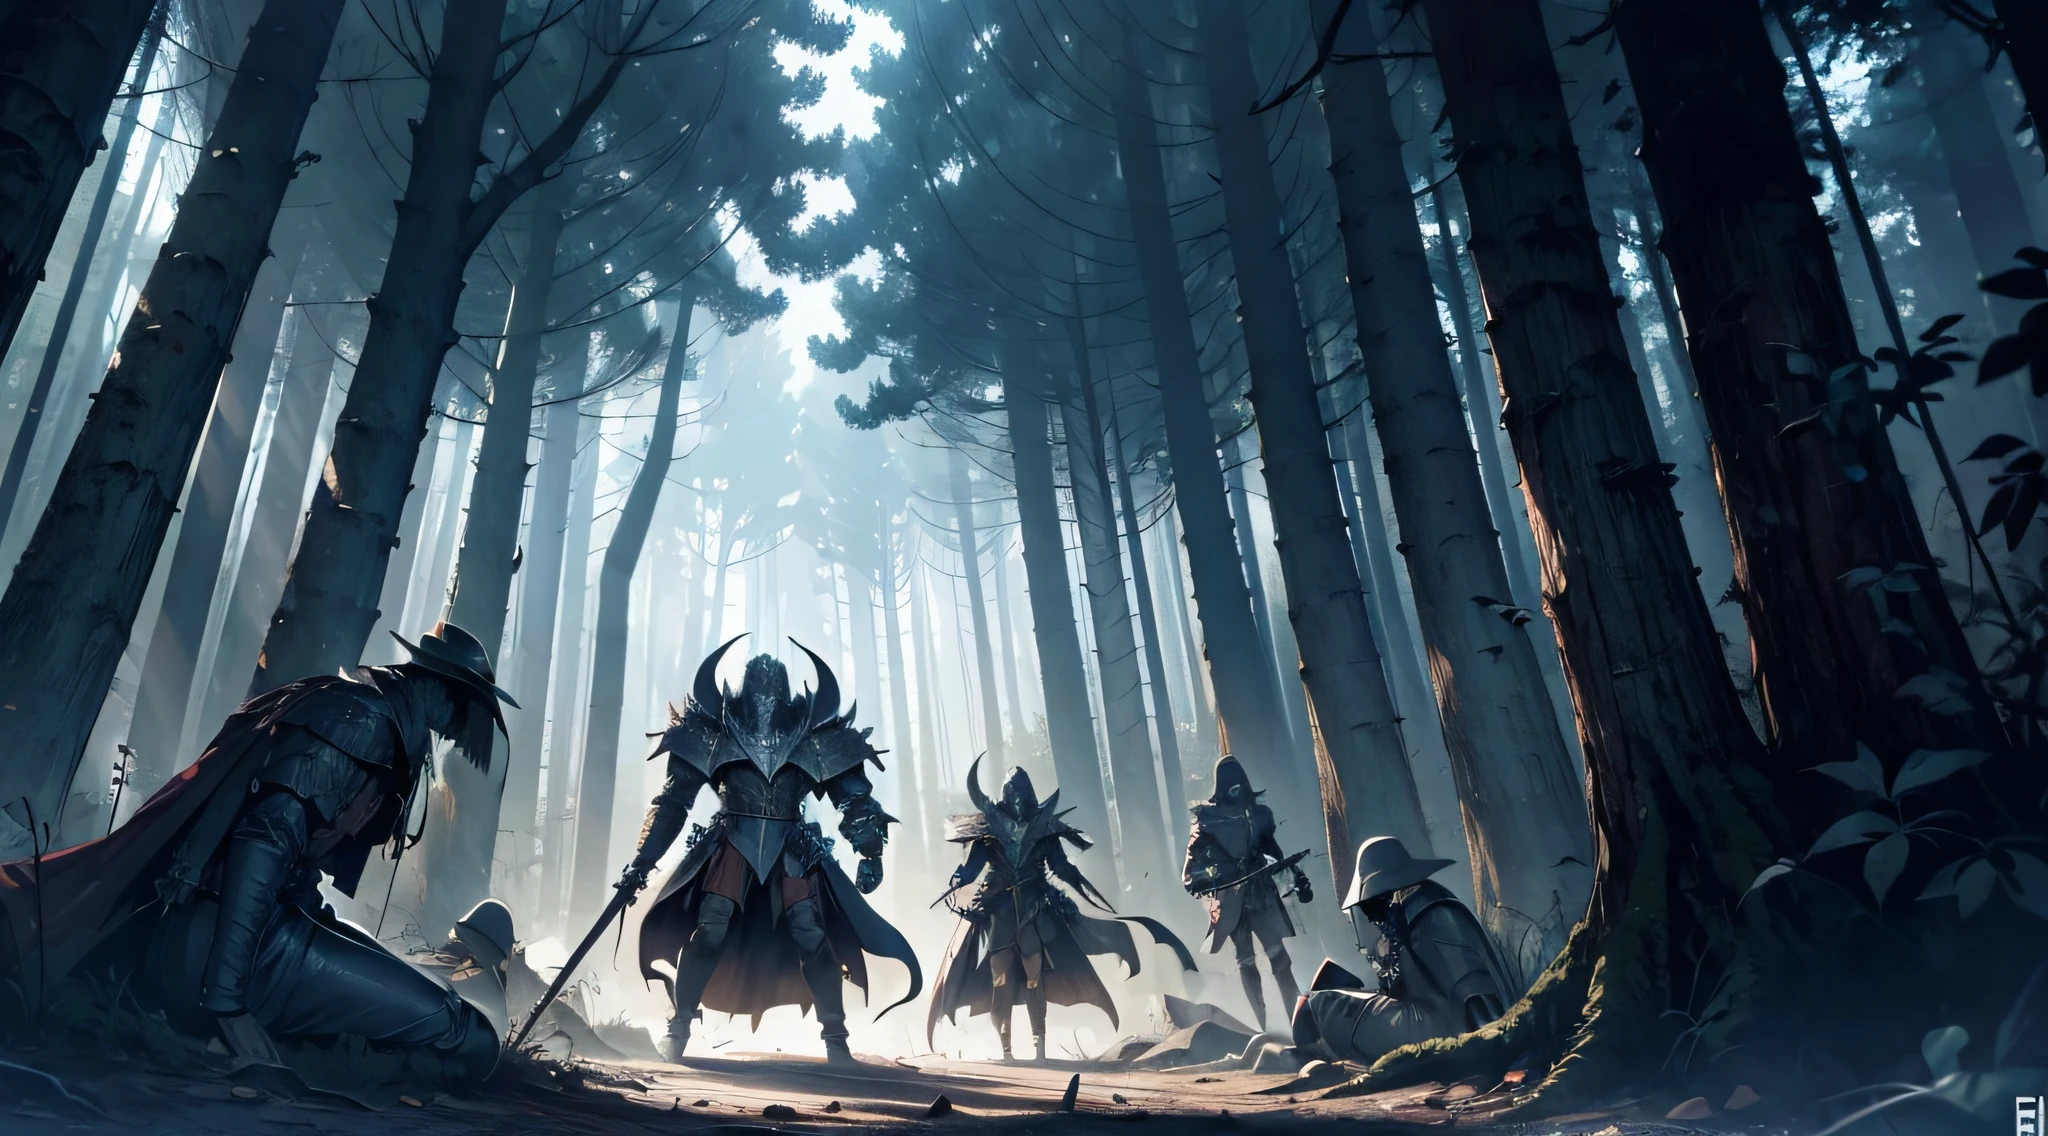 6 мертвых рыцарей лежат на земле без конечностей, в темном лесу, с волшебным существом над ними, манга рисунок, Затенение манги, 4k, берсерк искусство